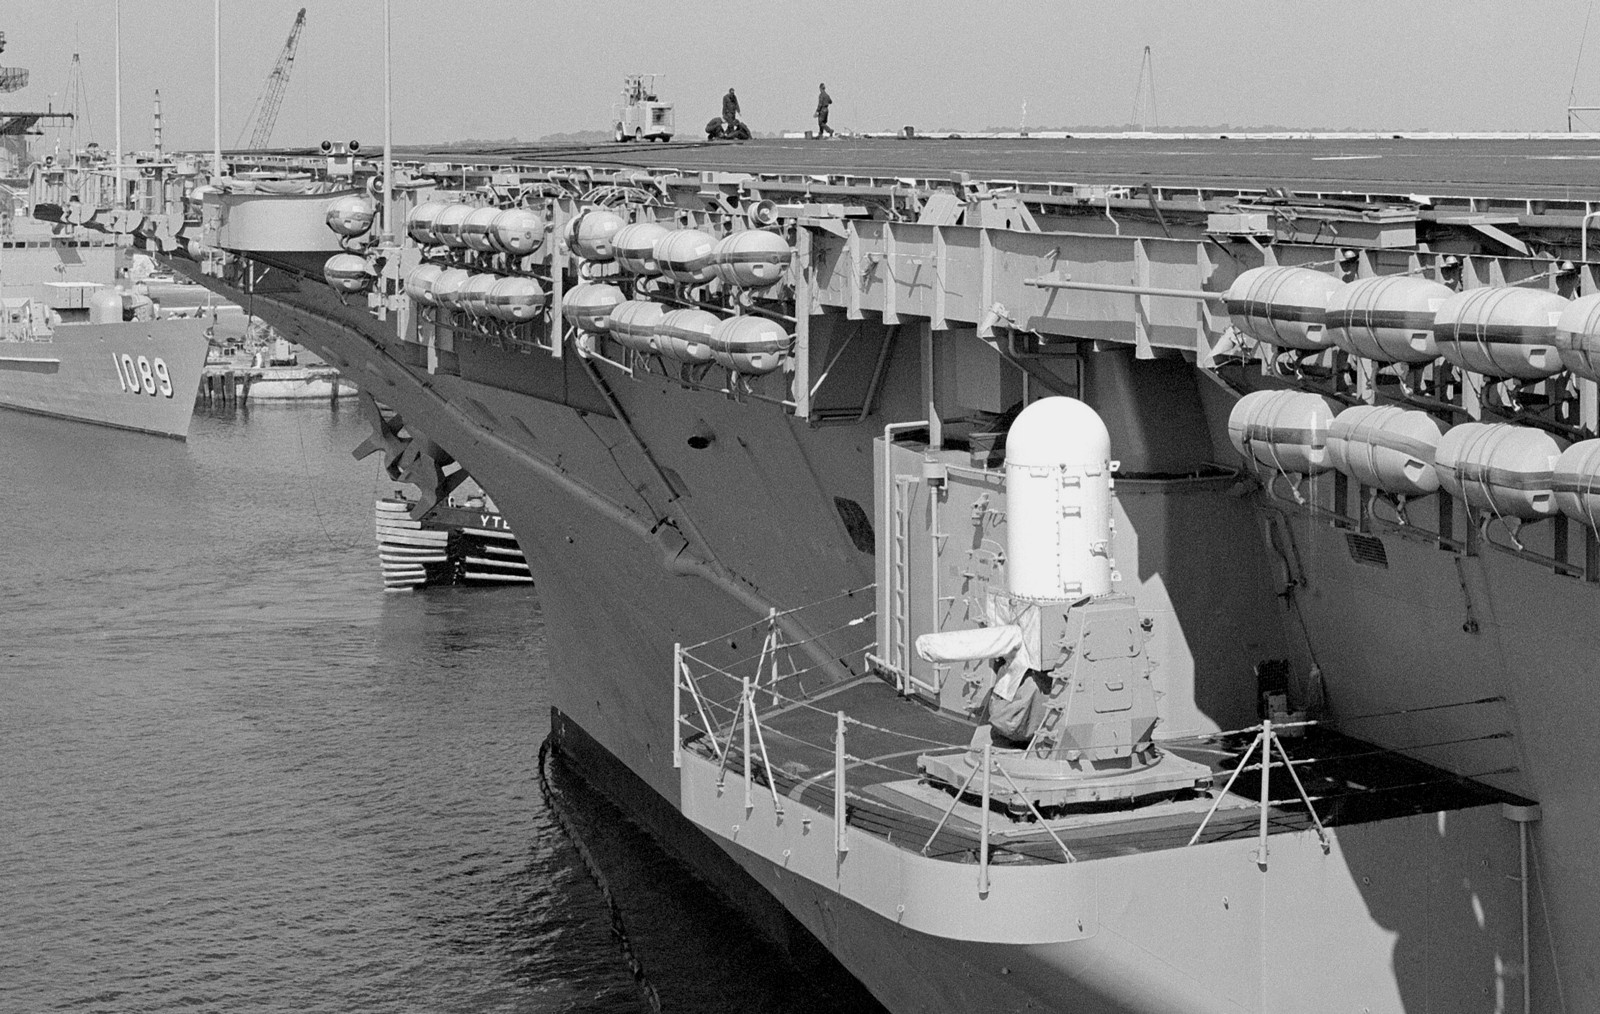 cv-59 uss forrestal aircraft carrier us navy mk.15 phalanx ciws mayport 85